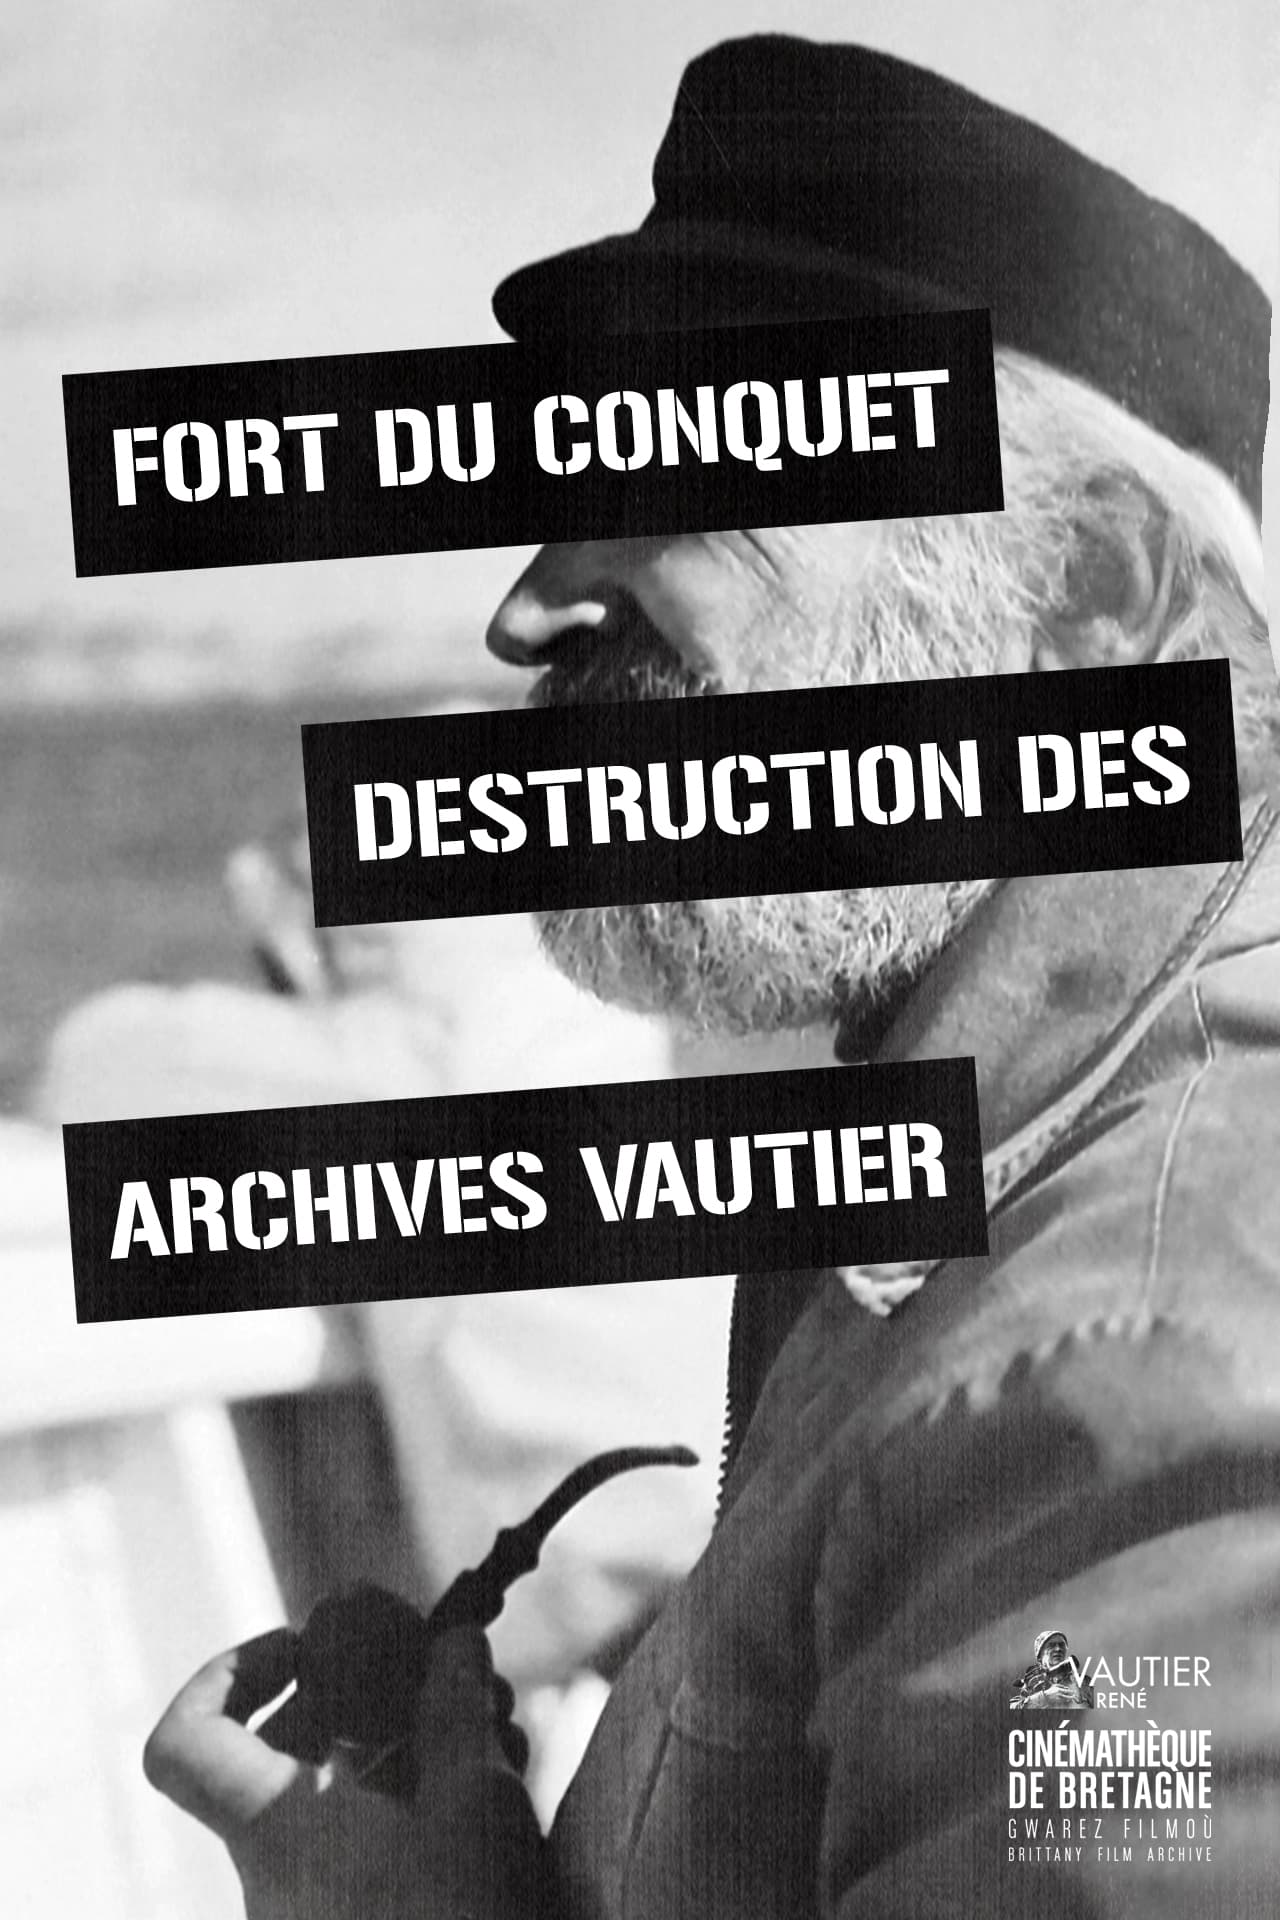 Fort Du Conquet Destruction of the Vautier Archives